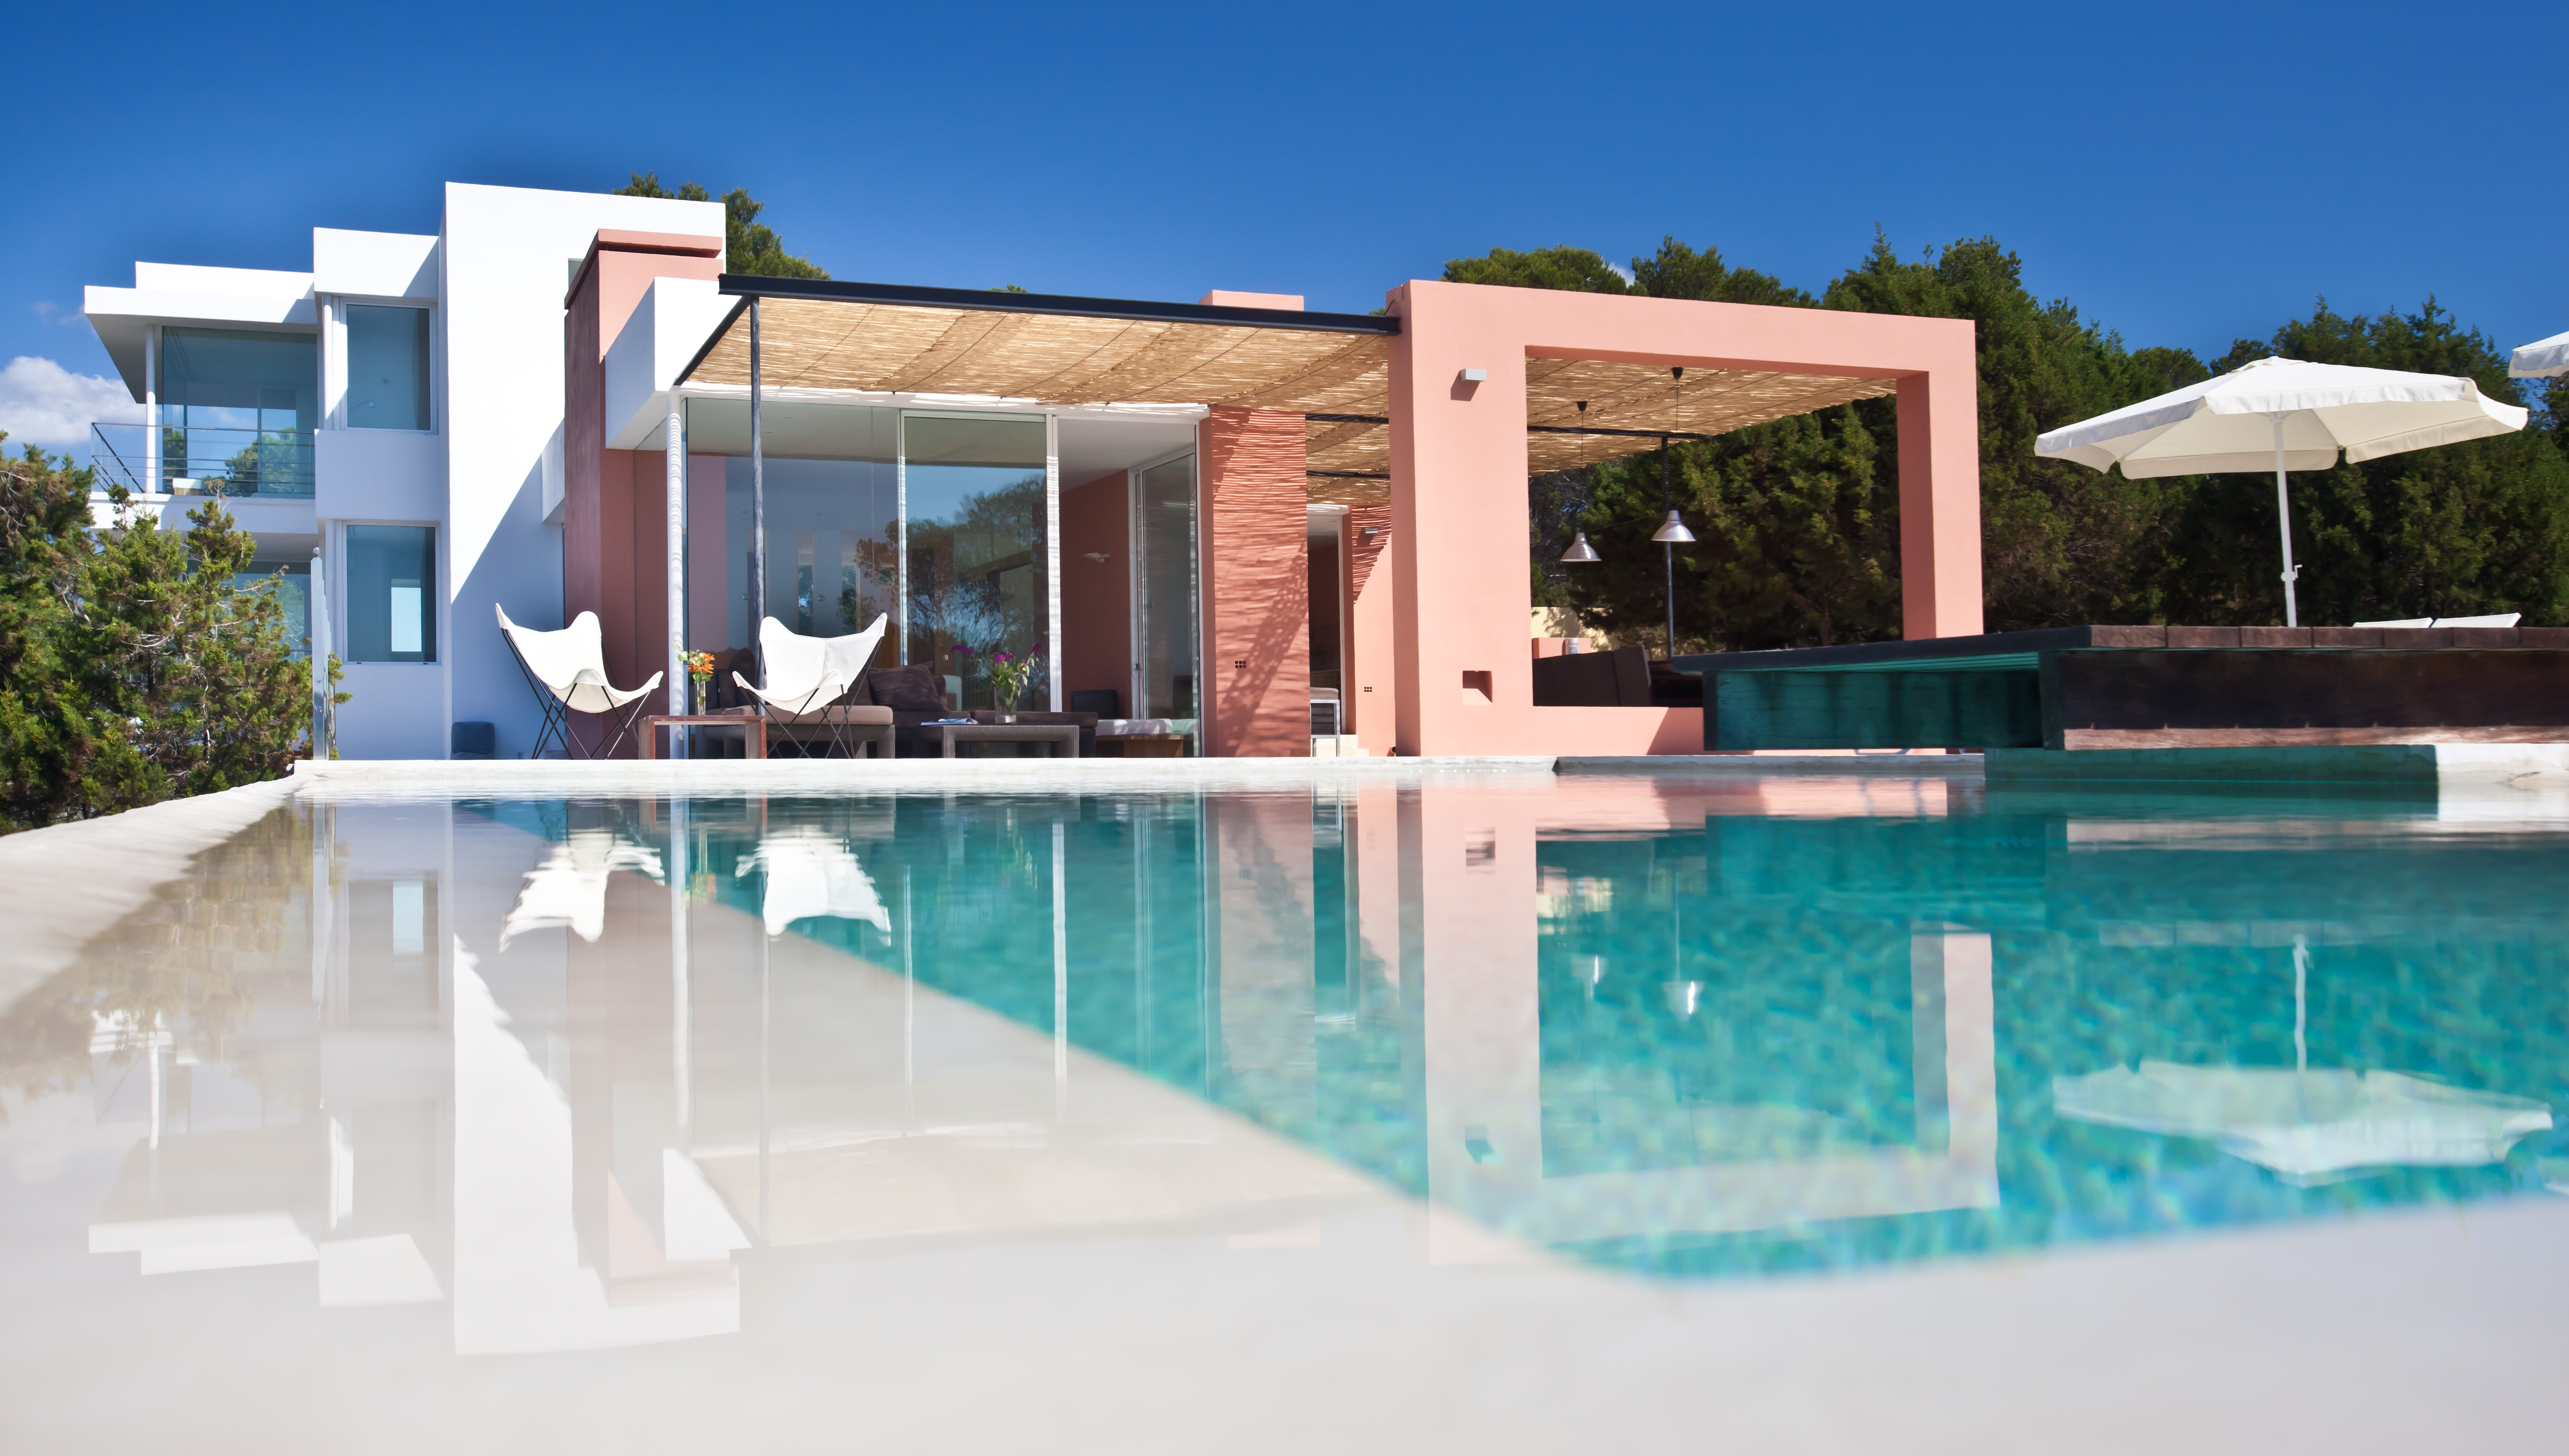 Villa de diseño moderno en el oeste de Ibiza